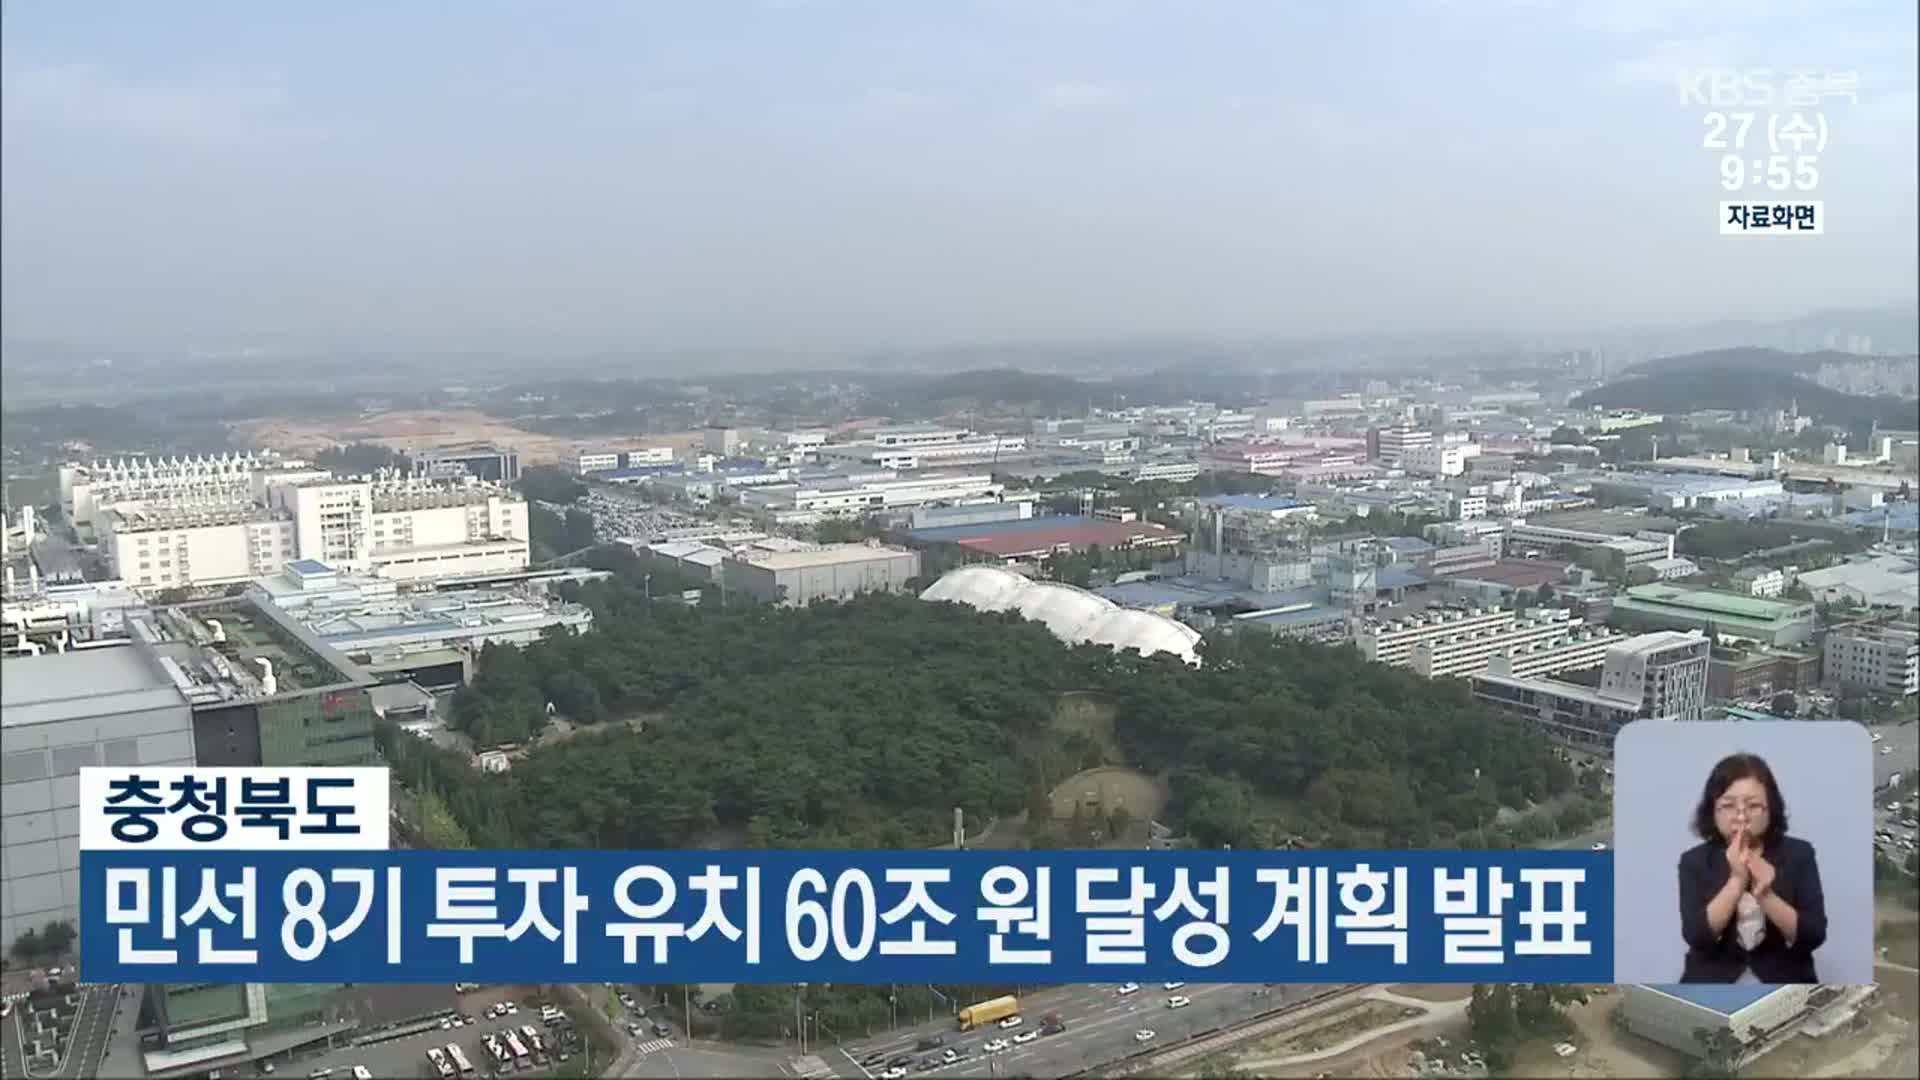 충청북도, 민선 8기 투자 유치 60조 원 달성 계획 발표